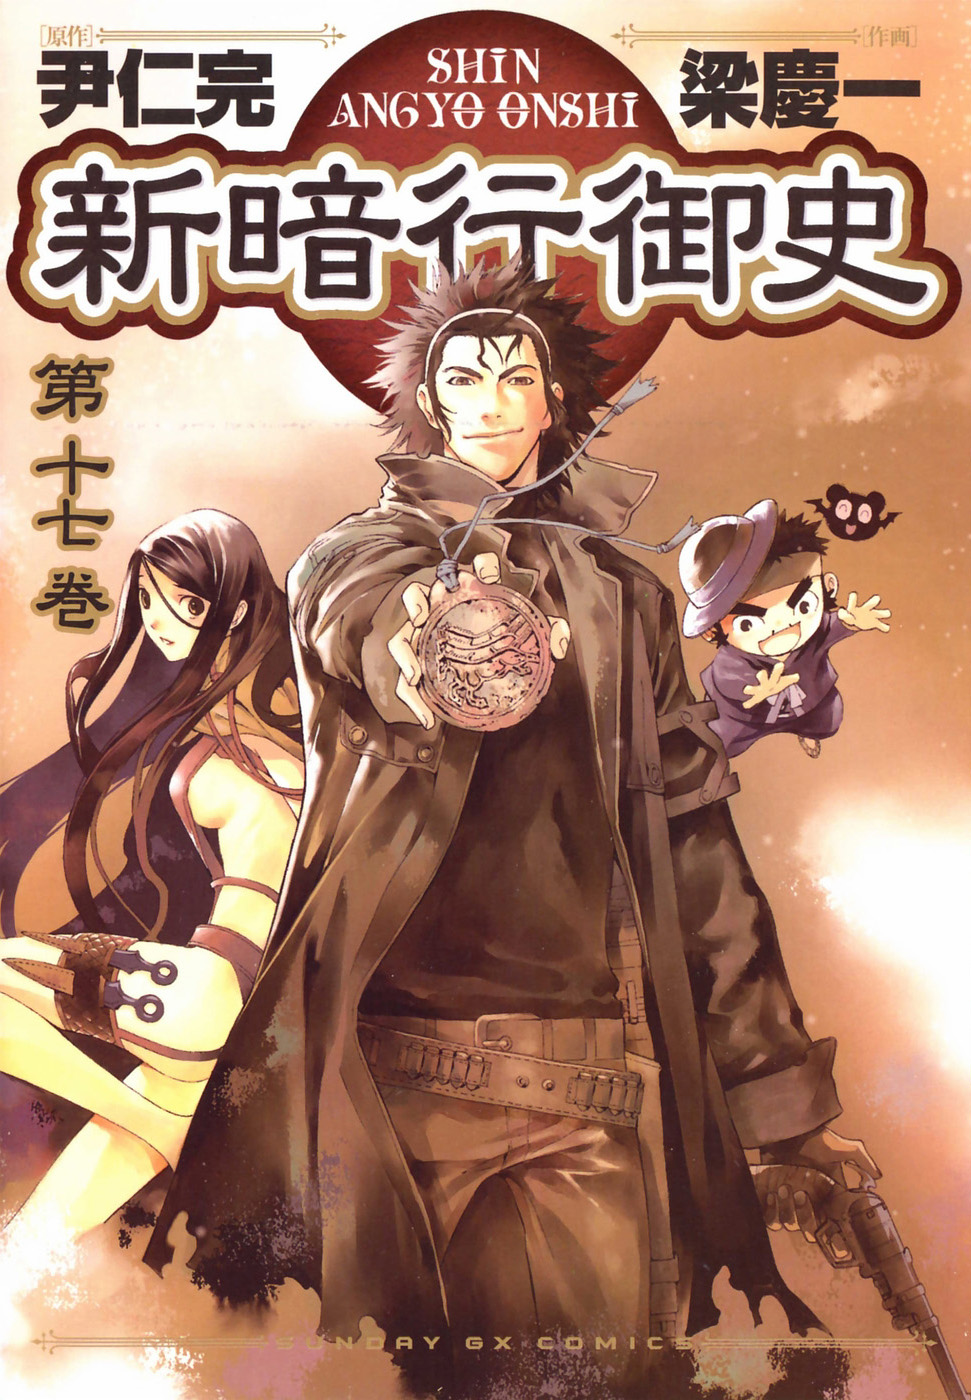 Blade of the Phantom Master Shin Angyo Onshi DVD Review  IGN